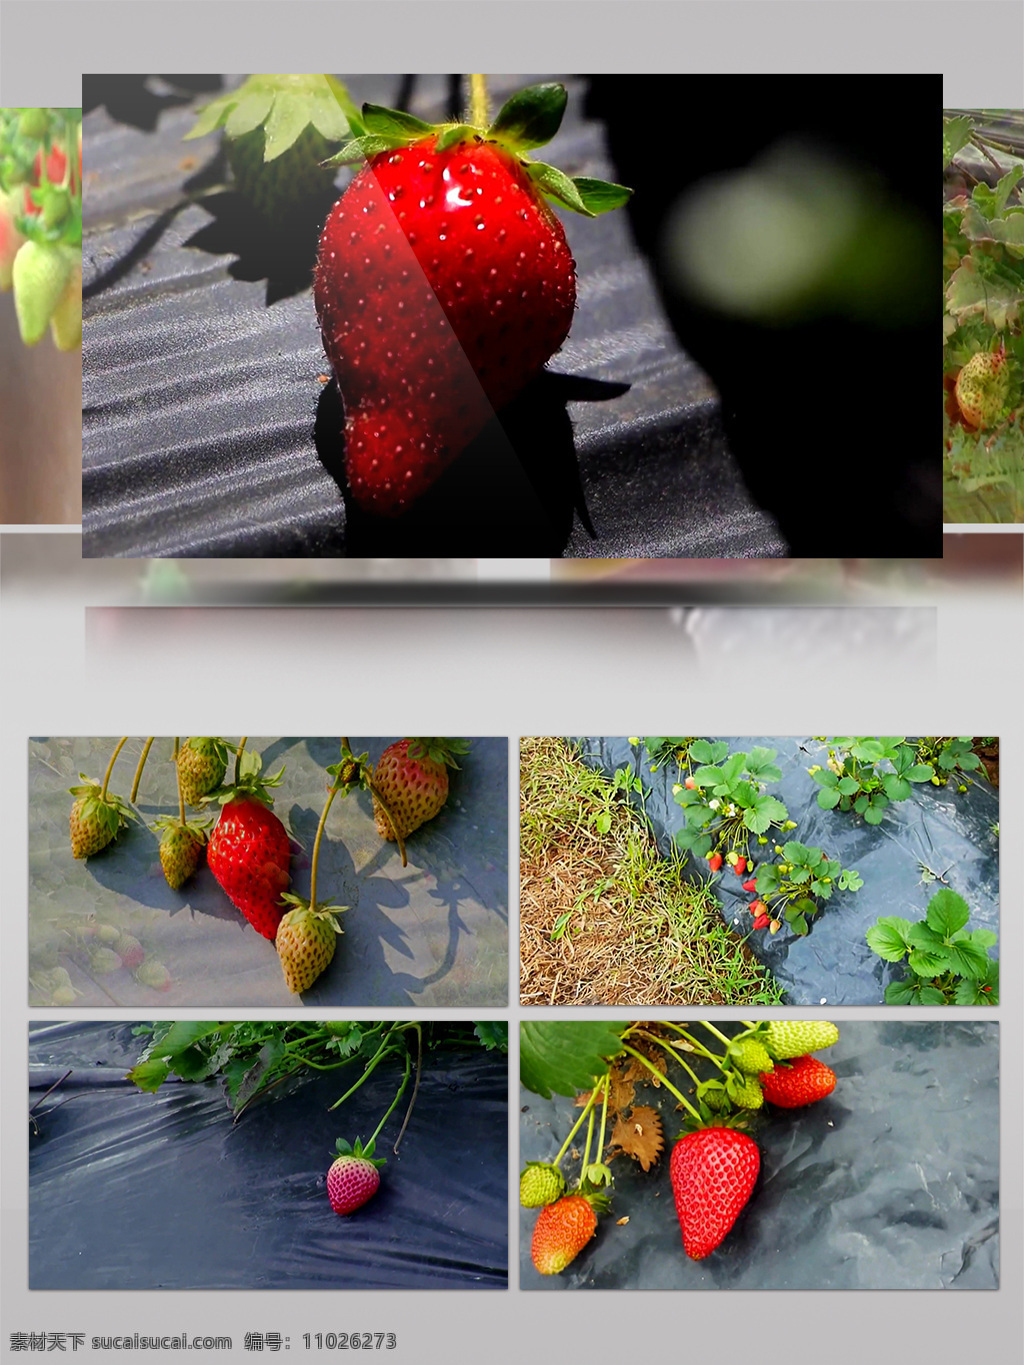 高清 实拍 草莓 种植园 特写 水果 新鲜 高清实拍 果实采摘 可口 绿色健康 农产品 山莓 无污染 鲜果 新鲜草莓 新鲜水果 营养美味